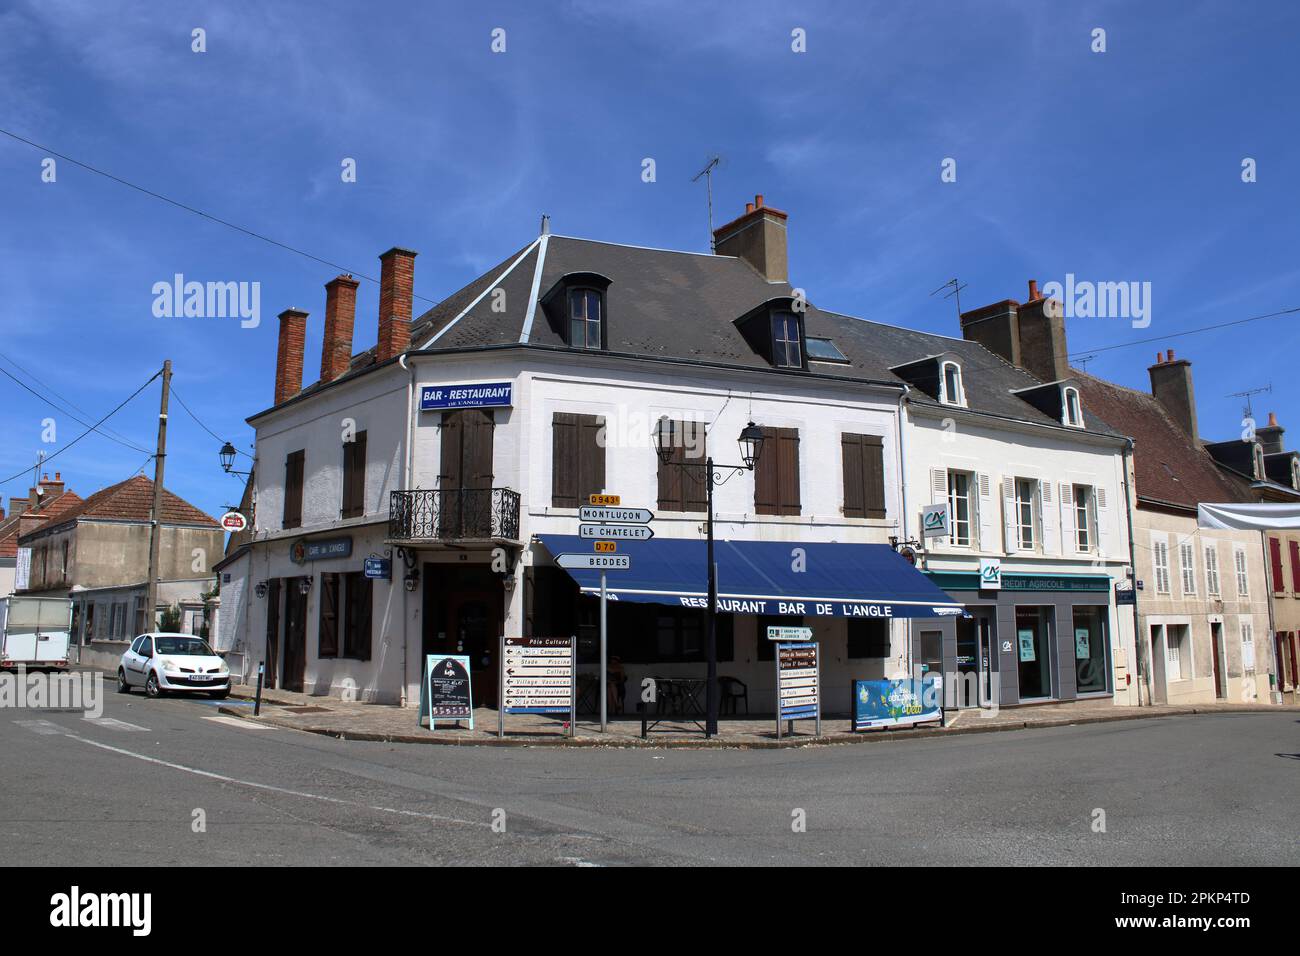 Vue sur un coin de rue typiquement français et un bar ici situé dans la ville rurale française de Châteaumeillant une ville dans la région du cher du centre de la France. Banque D'Images